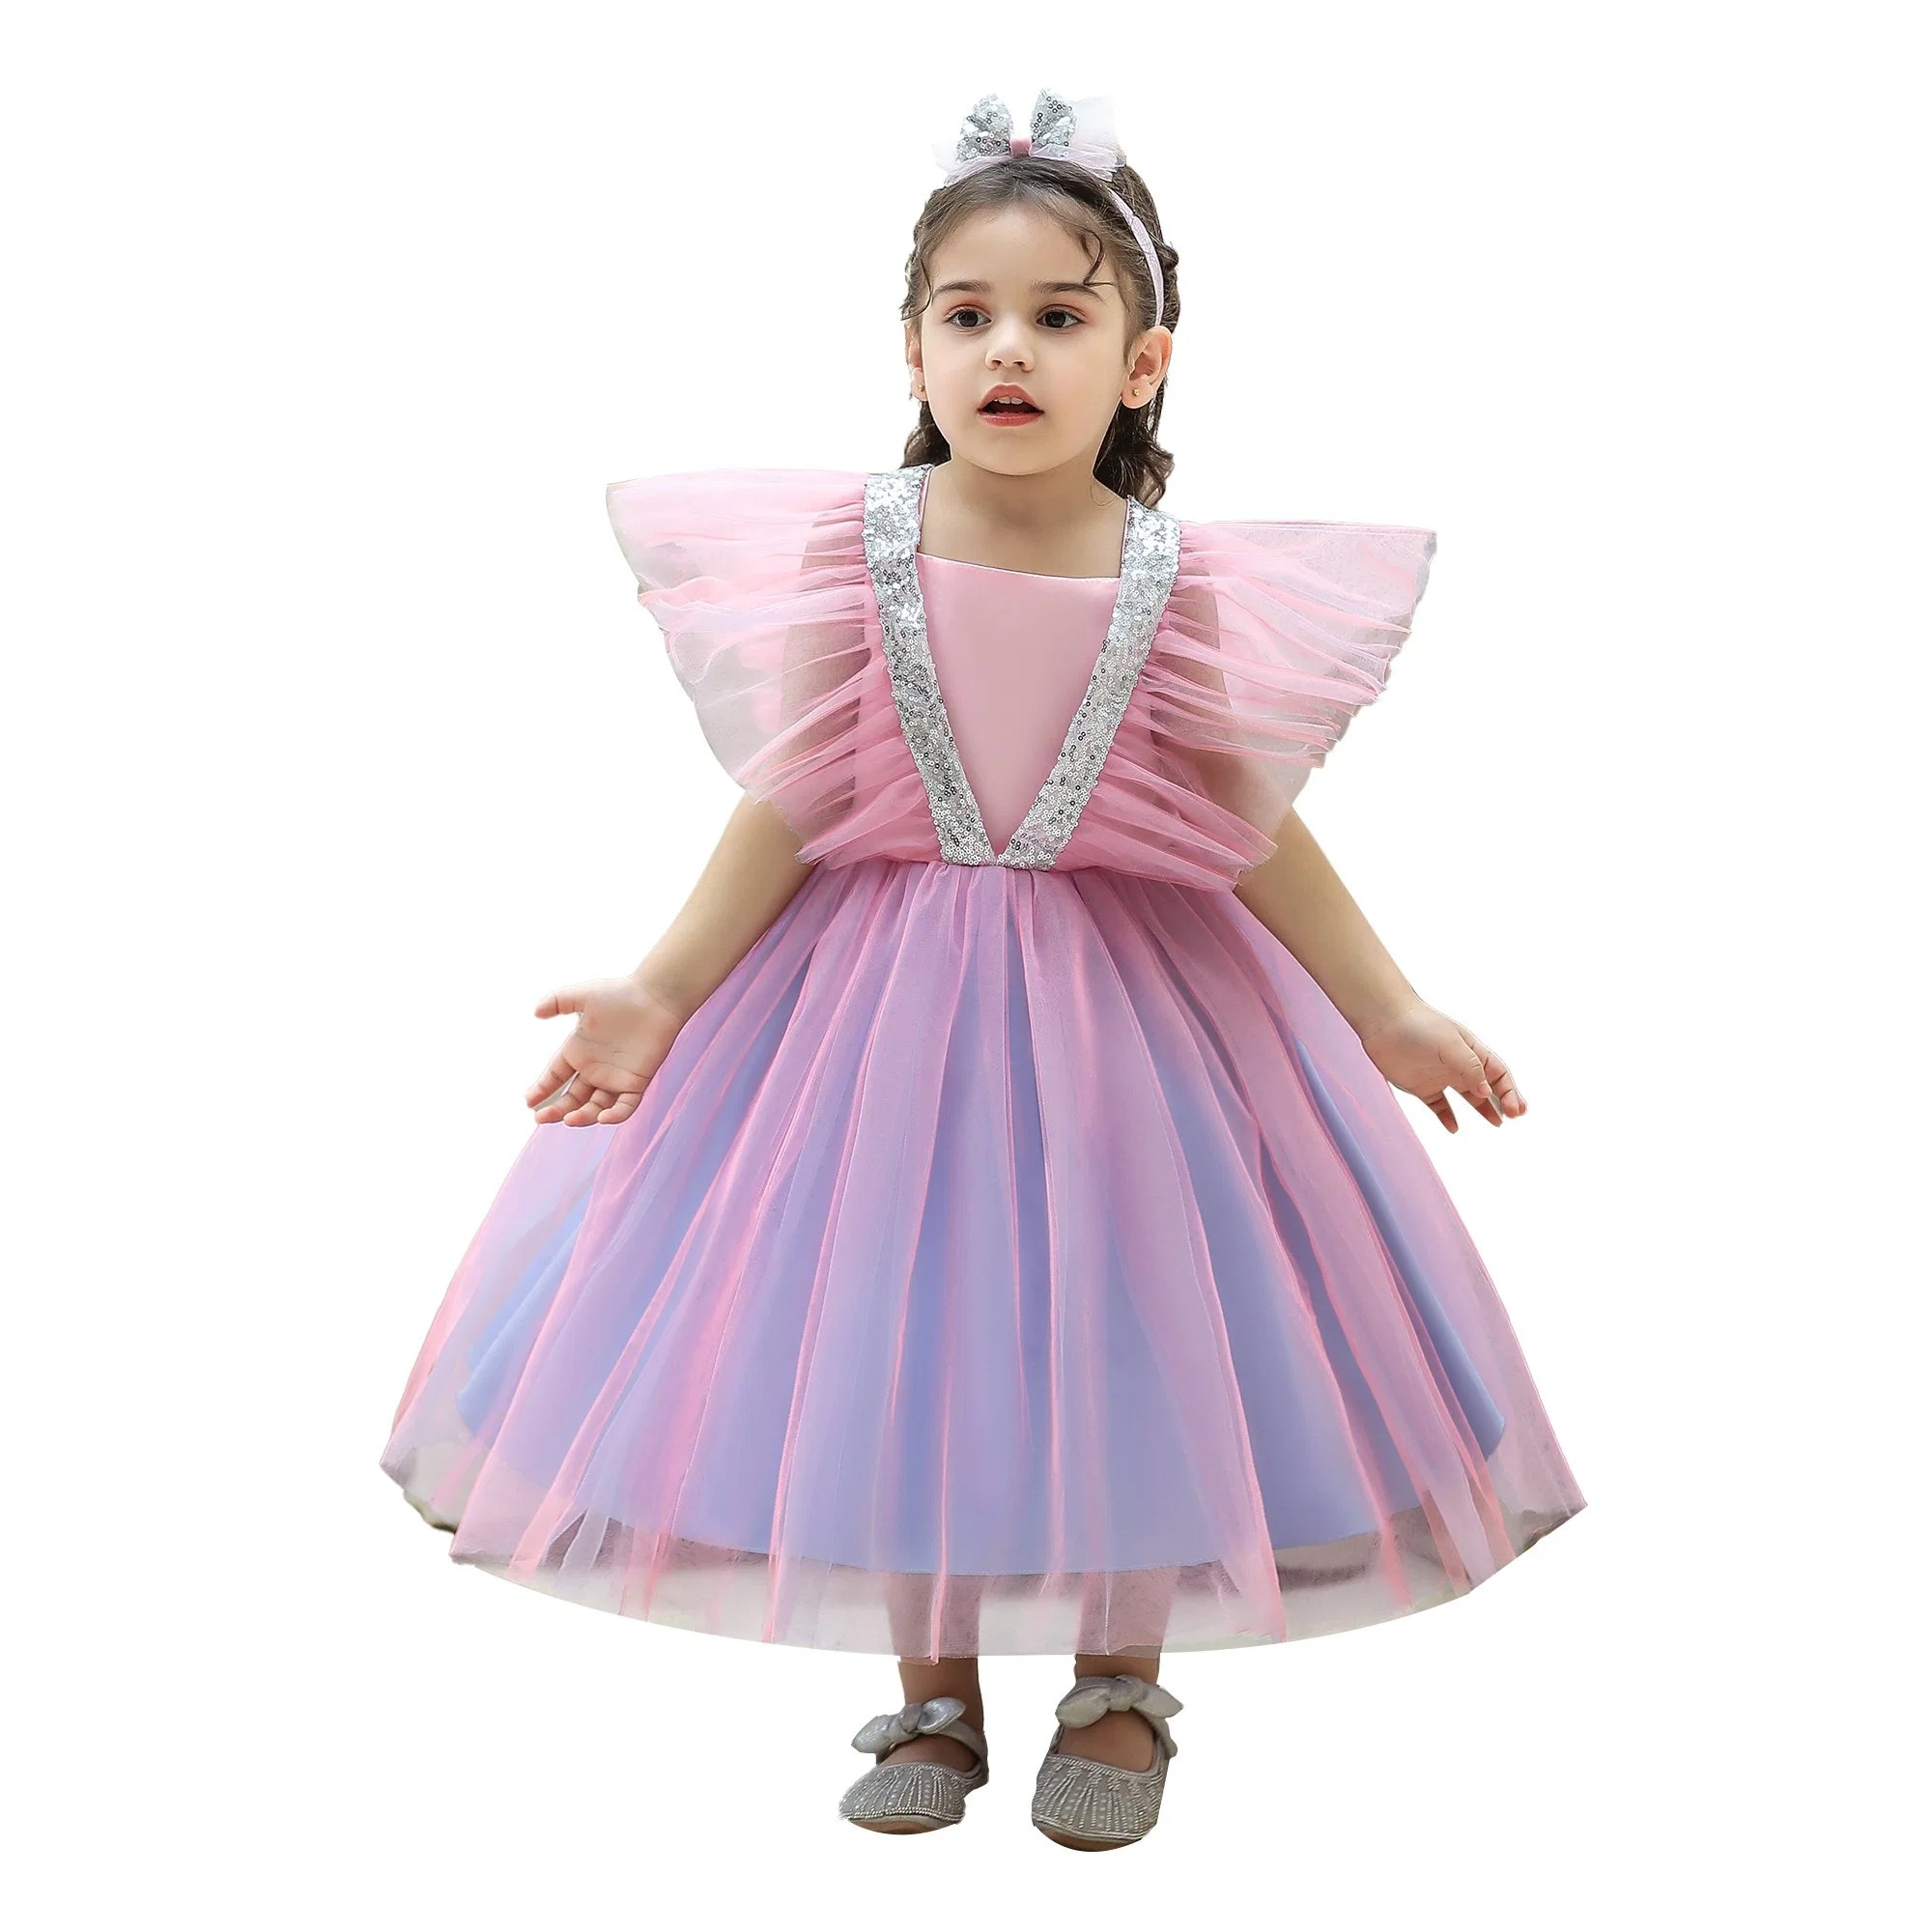 Children Apparel Baby Wear Girls Party Garment Wedding Dress Ball Gown Princess Frock Sweet Net Dress